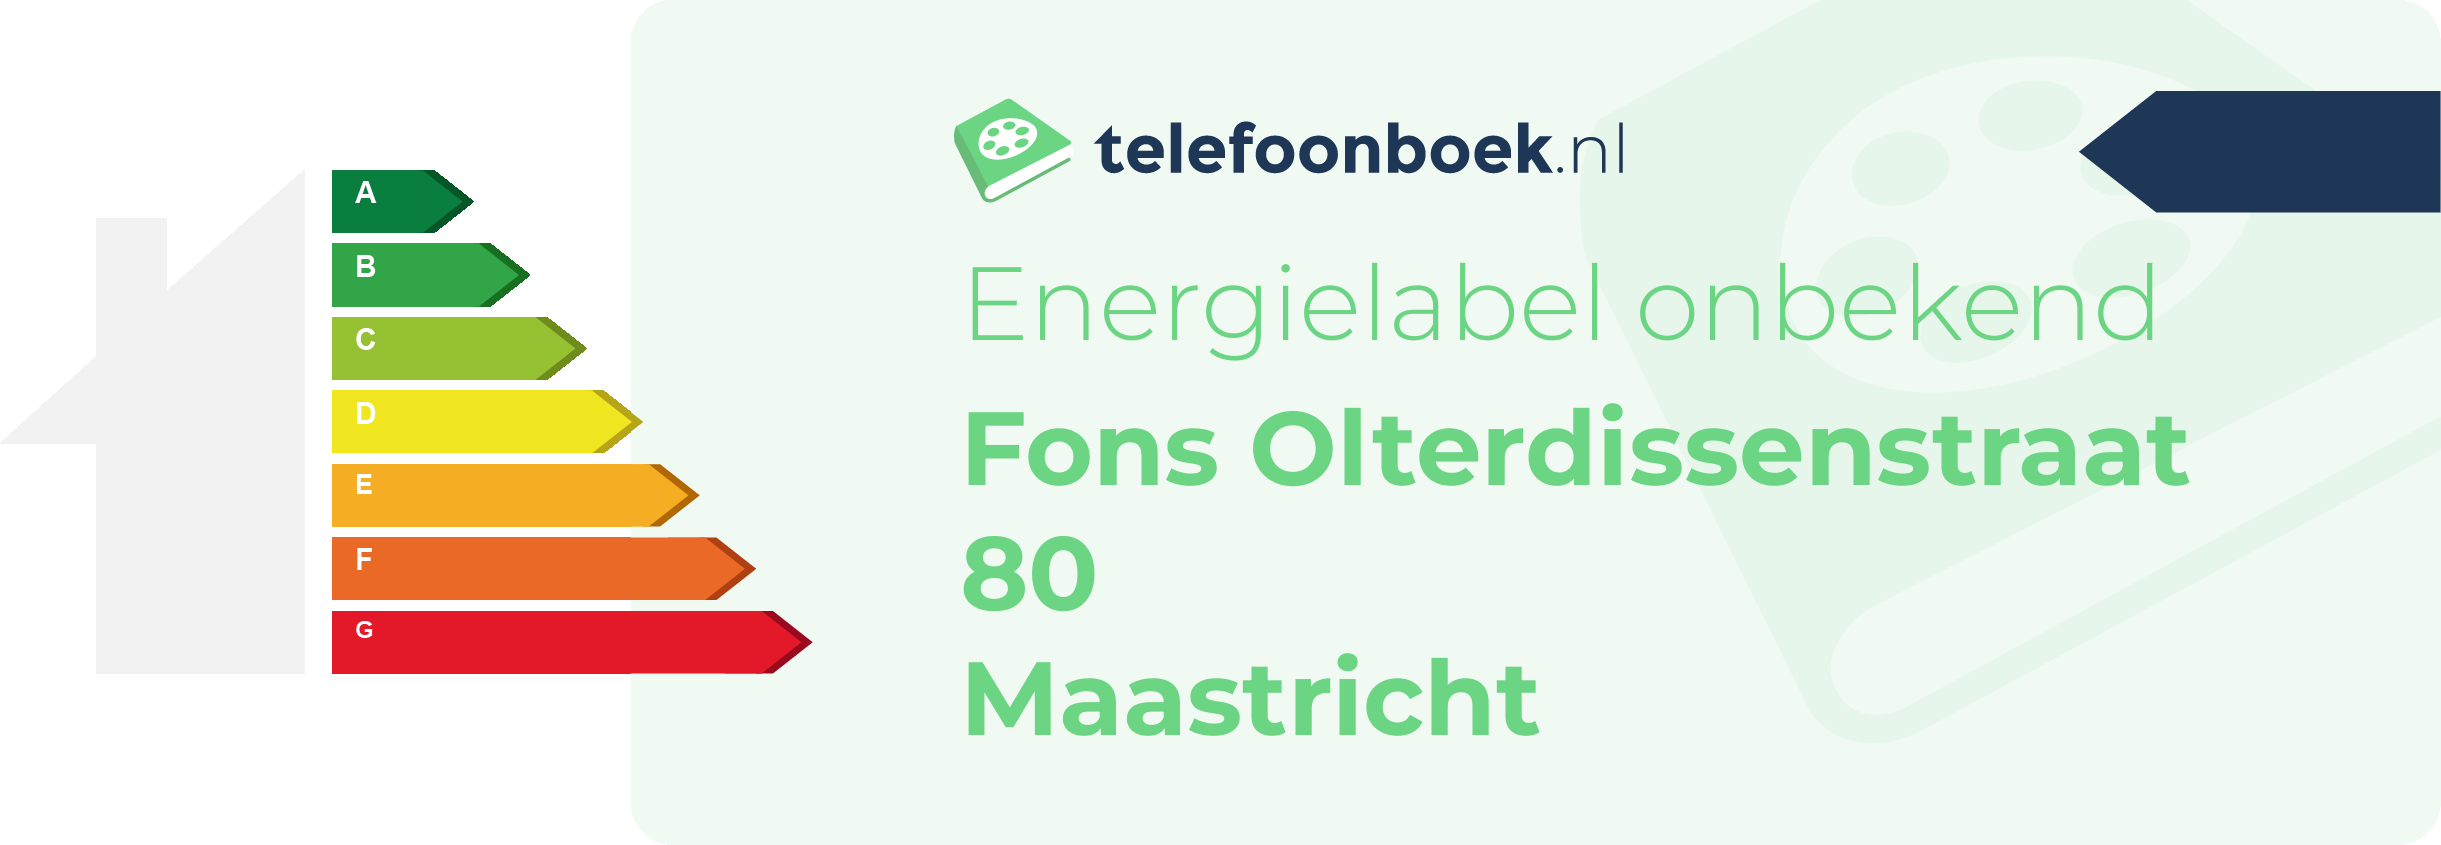 Energielabel Fons Olterdissenstraat 80 Maastricht